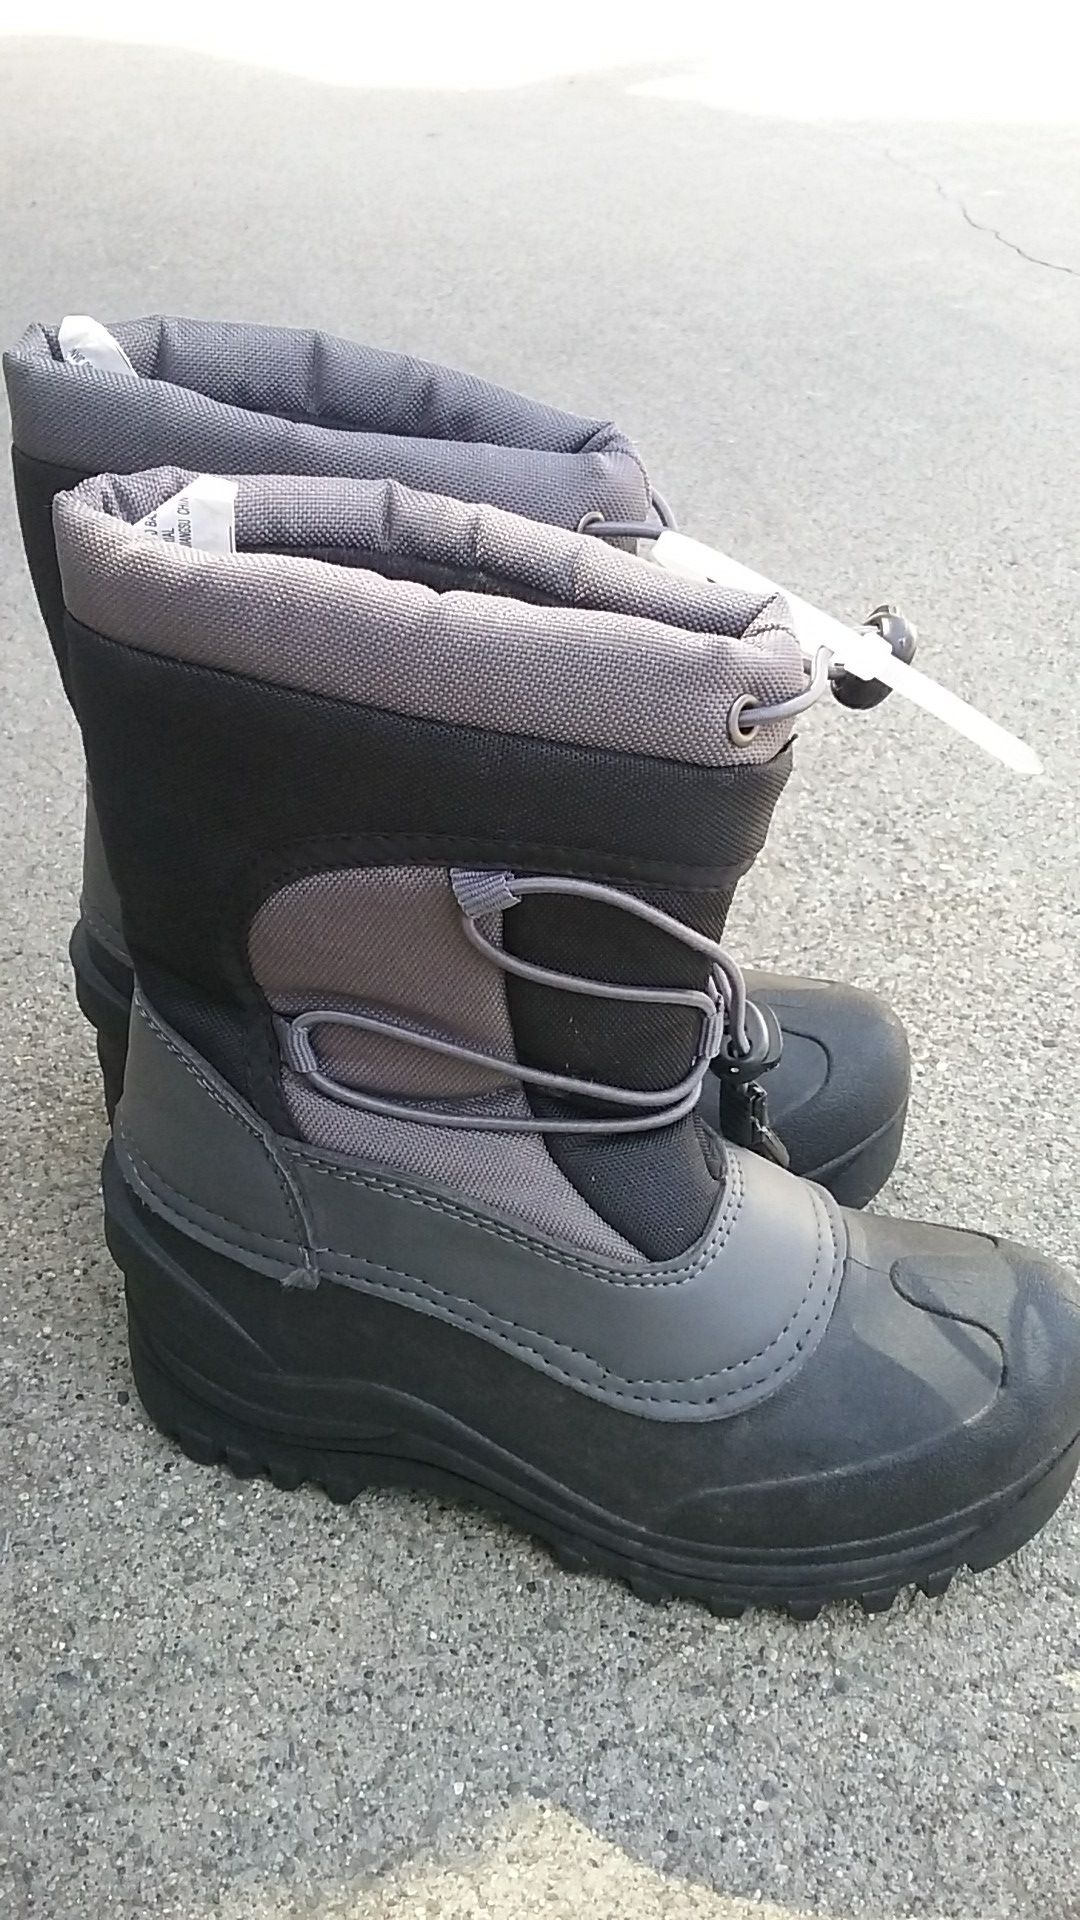 Snow boots, Itaska, like new, kids 1